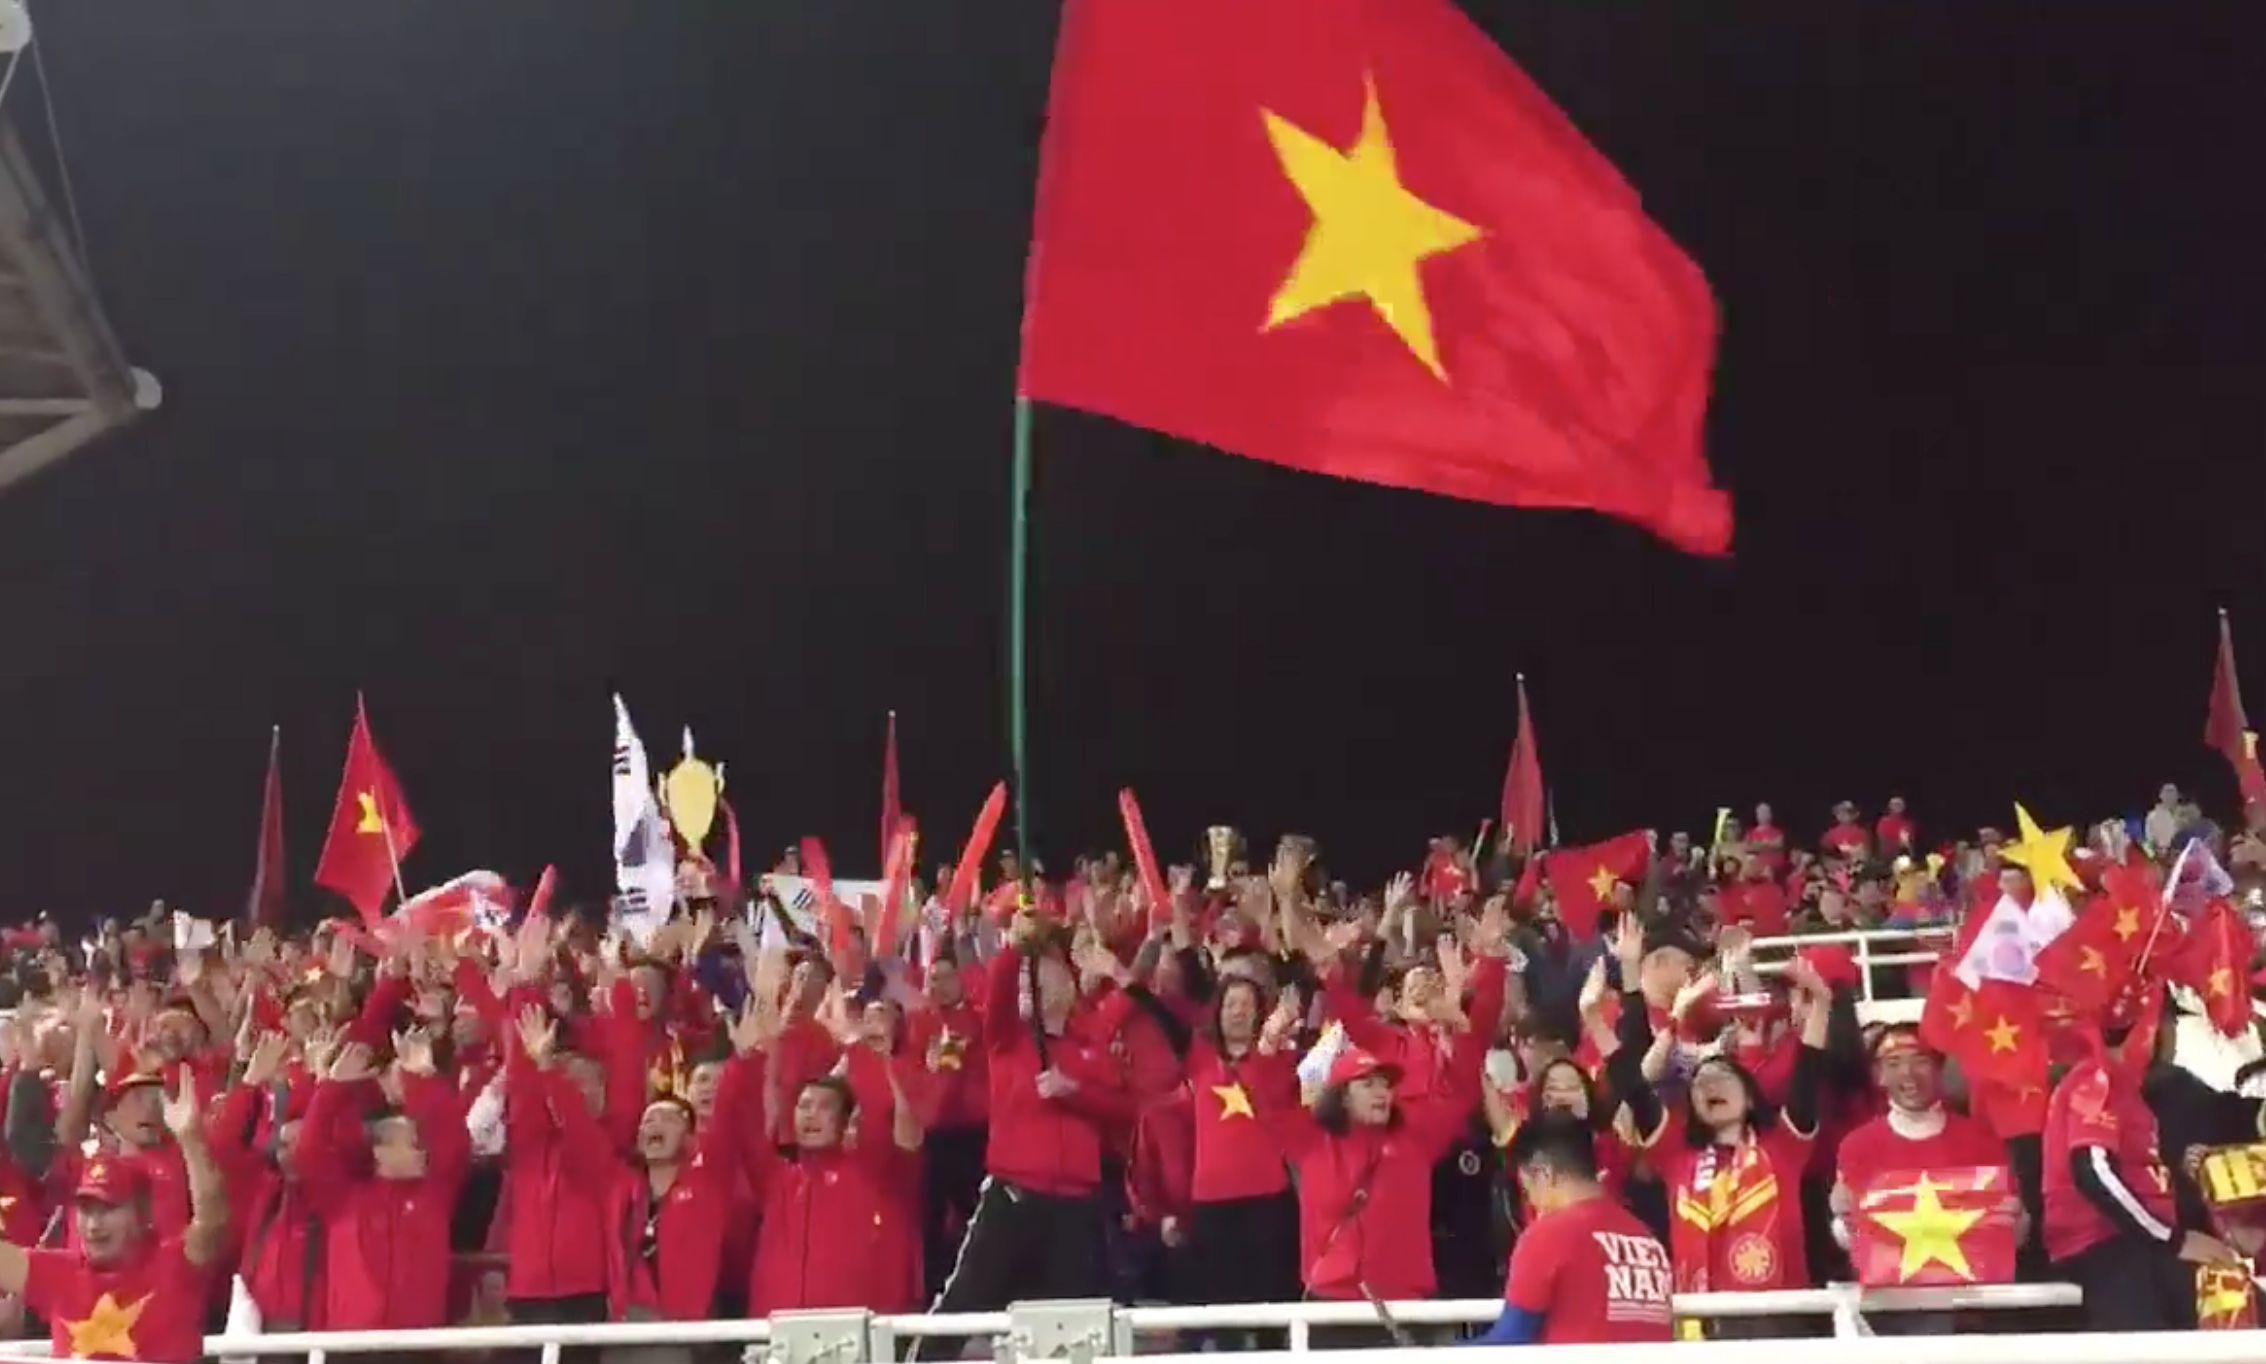 Bay lá cờ Việt Nam (Flying Vietnamese flag):
Năm 2024 đã đến và đất nước Việt Nam rực rỡ hơn bao giờ hết với lá cờ đỏ sao vàng tung bay trên khắp mọi miền. Hình ảnh này không chỉ đại diện cho sự tự hào của người Việt mà còn là niềm tin vào tương lai tươi sáng của đất nước.